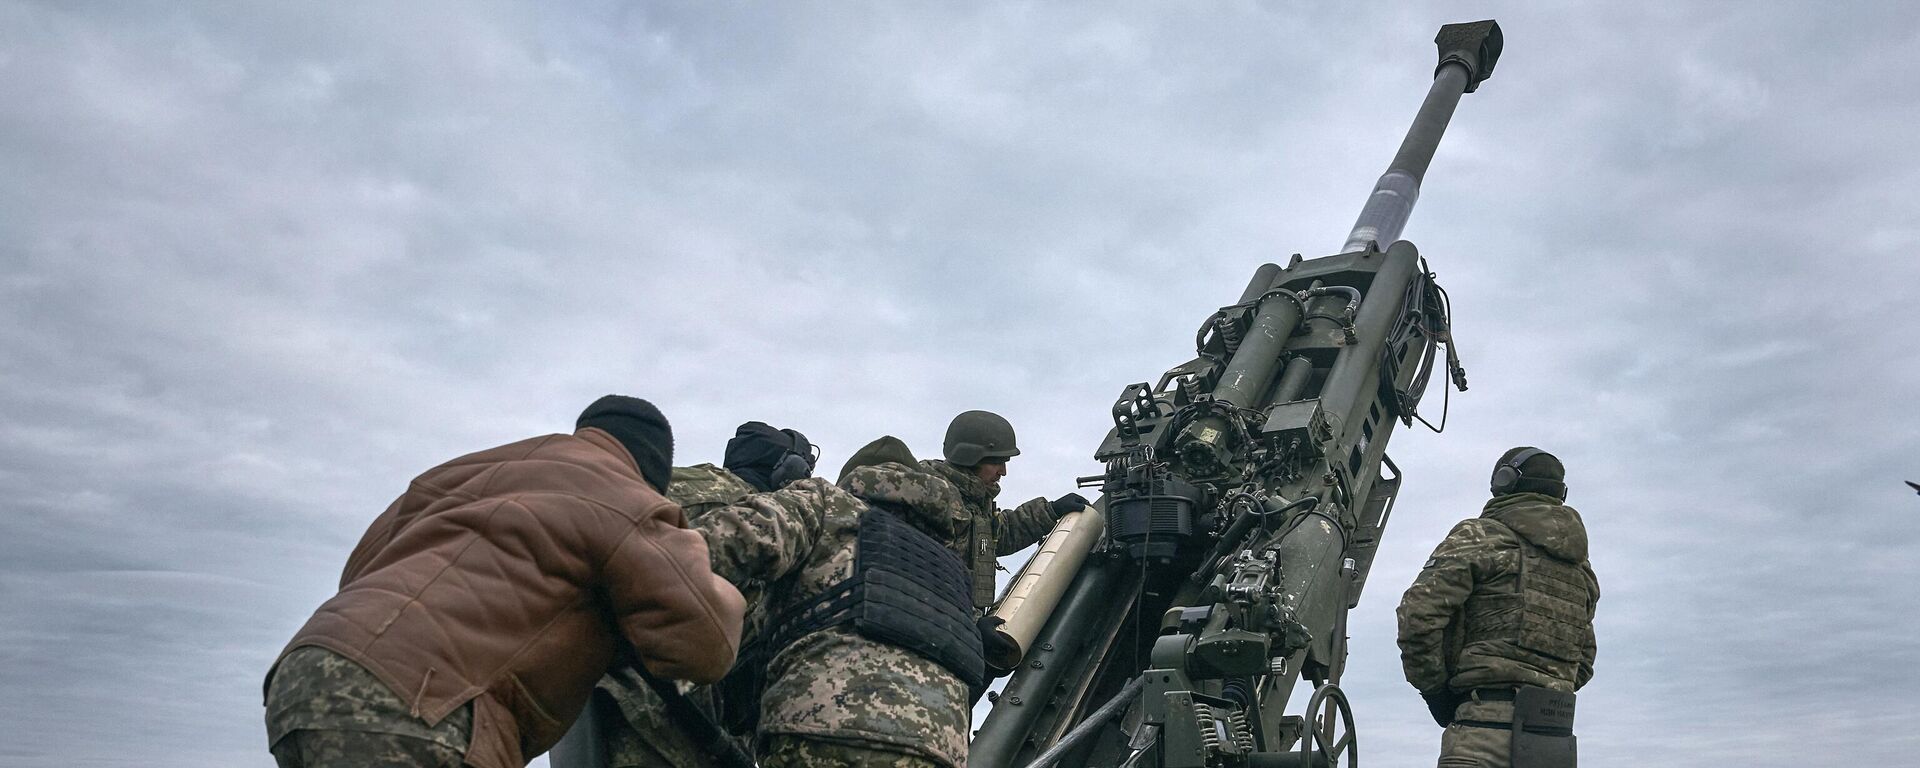 Militares ucranianos operan un sistema de artillería estadounidense M777 en la región de Jersón el 9 de enero de 2023 - Sputnik Mundo, 1920, 20.02.2023